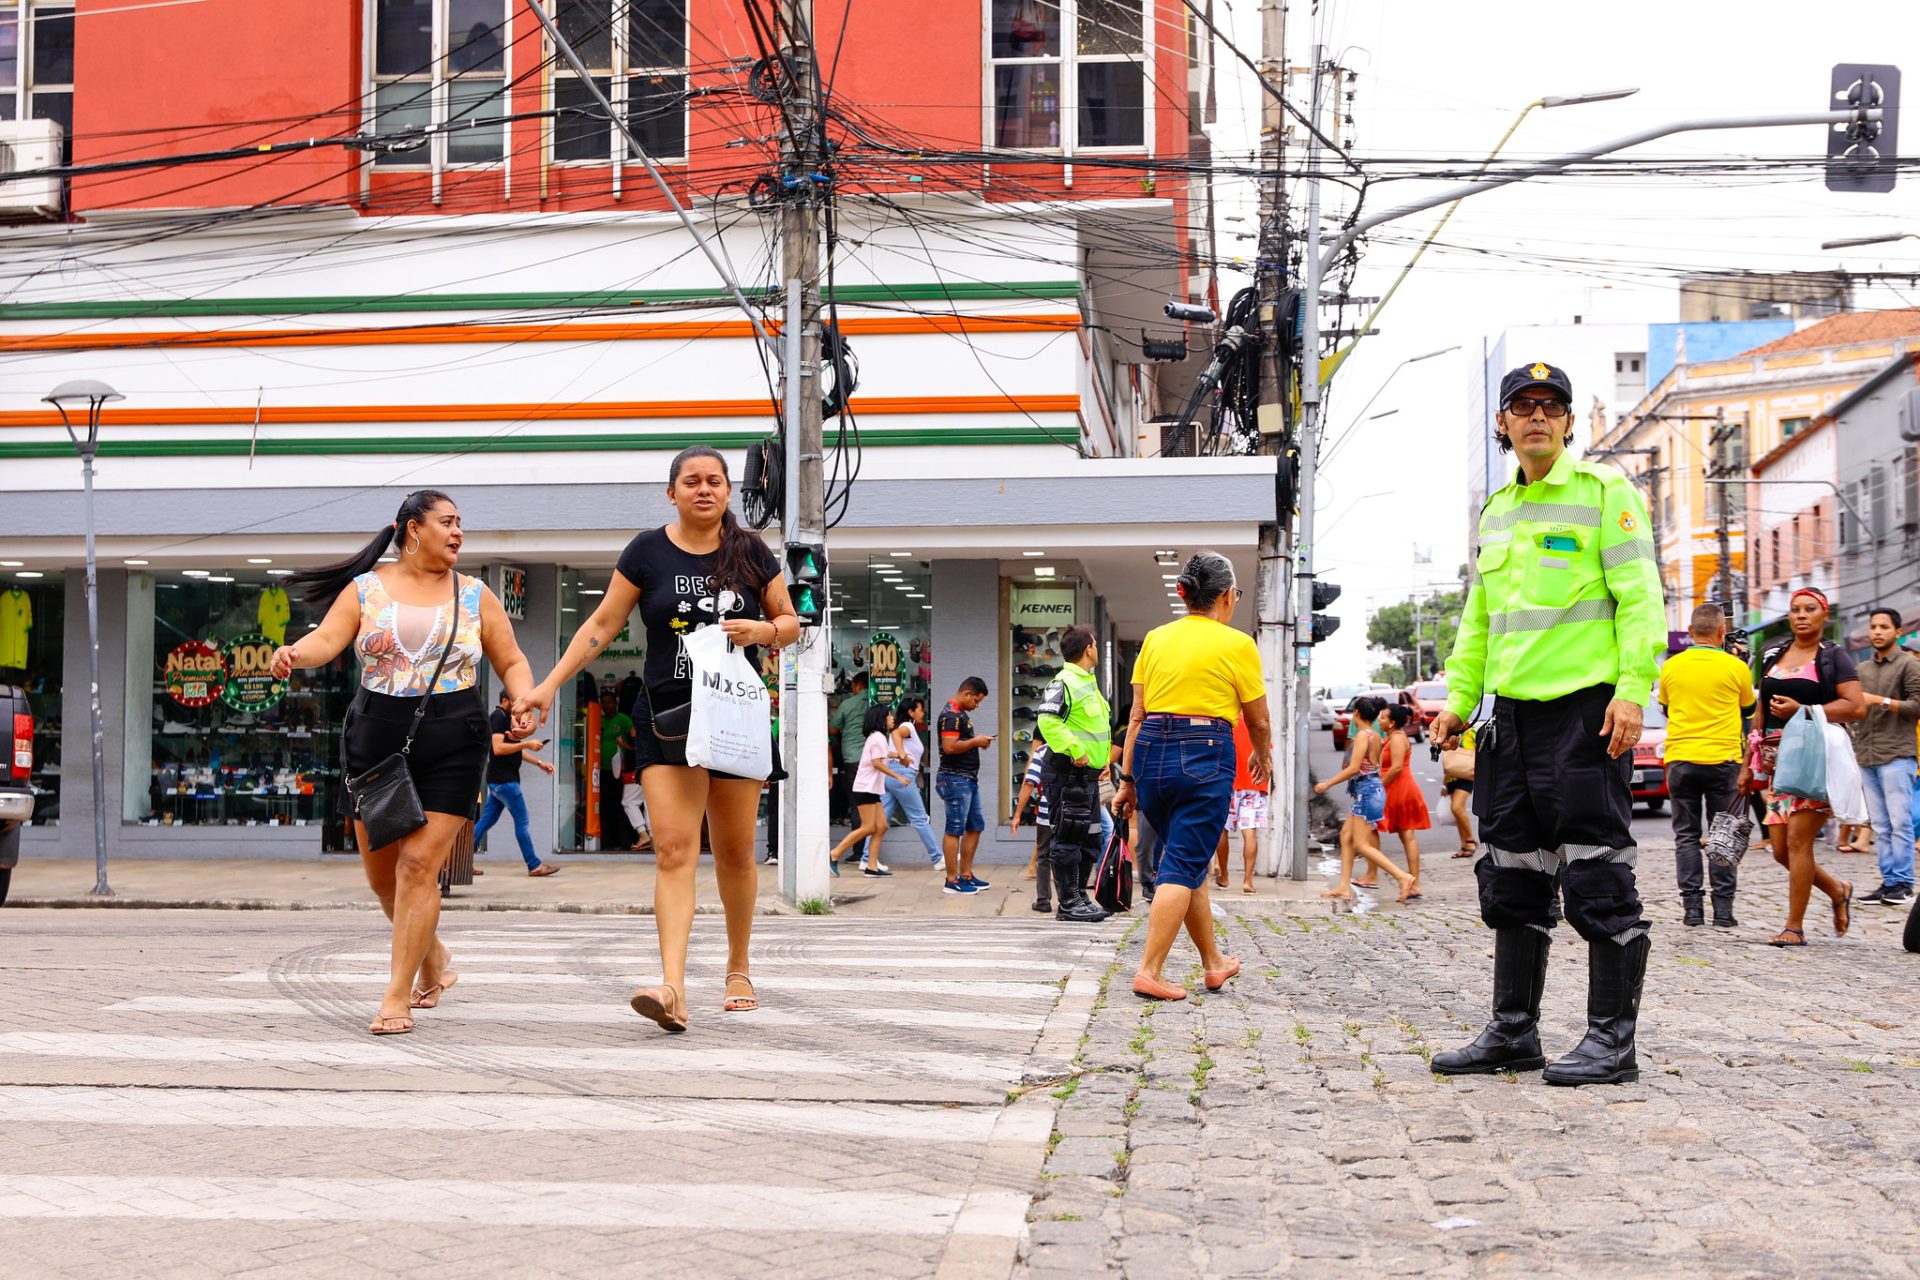 Operação reforça atuação de agentes de trânsito em ruas de intenso comércio - Foto: João Viana/Semcom